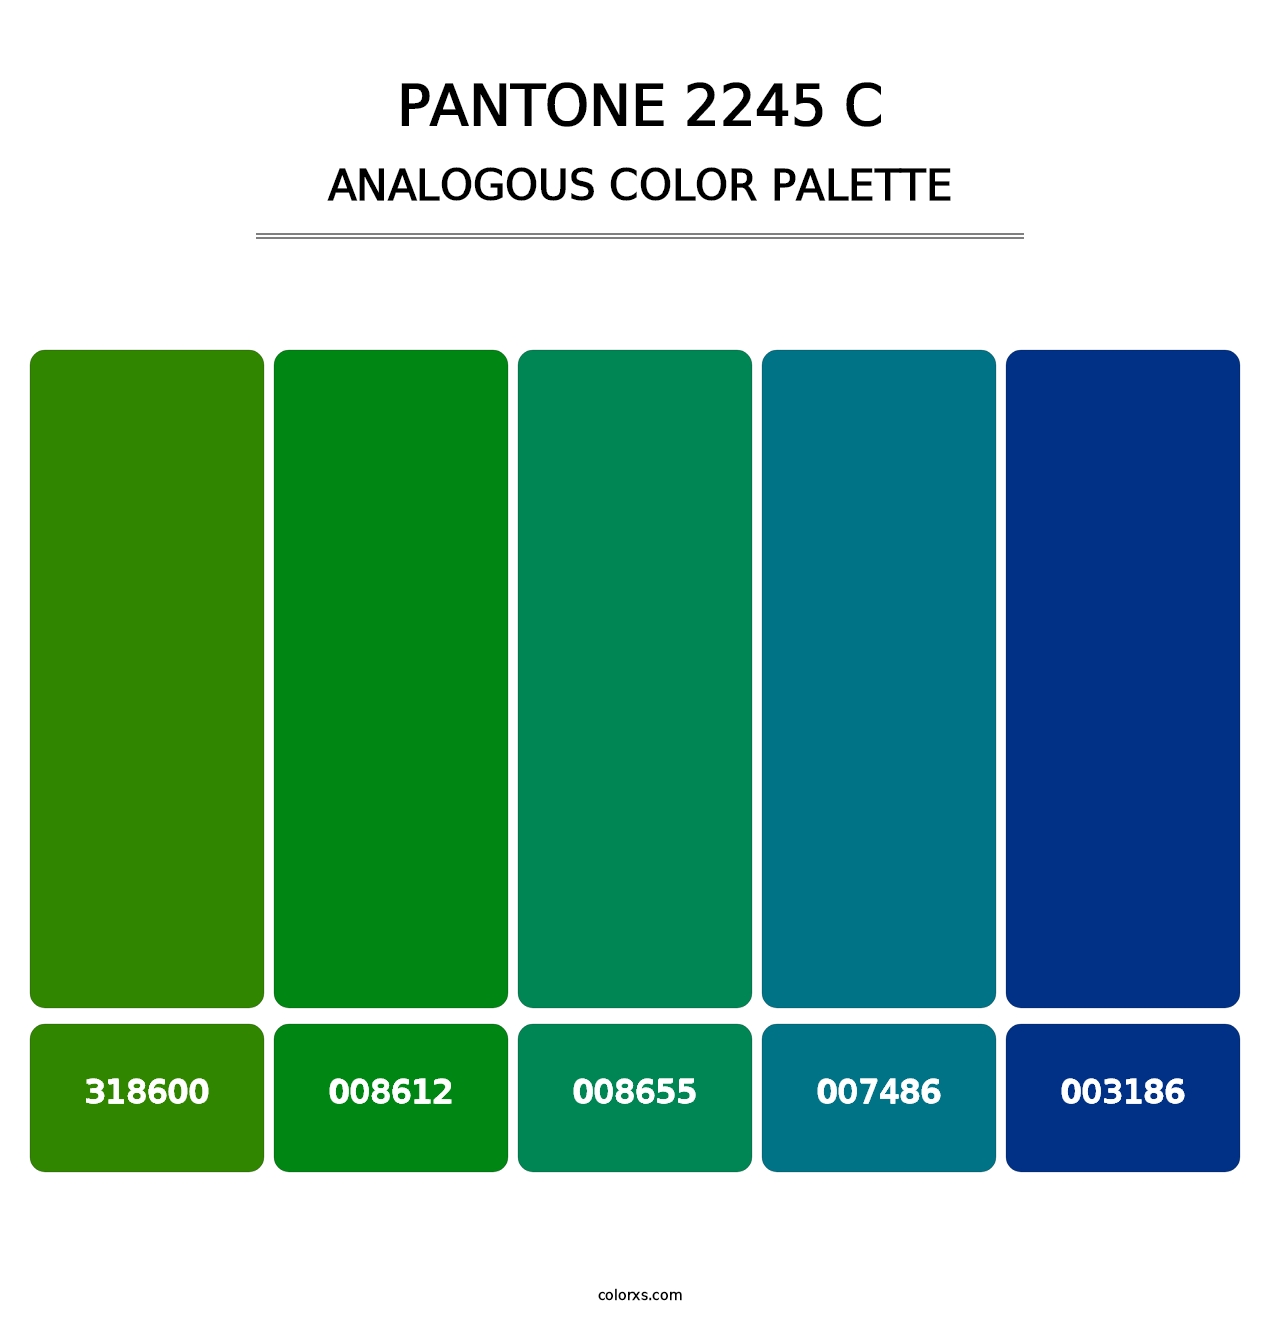 PANTONE 2245 C - Analogous Color Palette